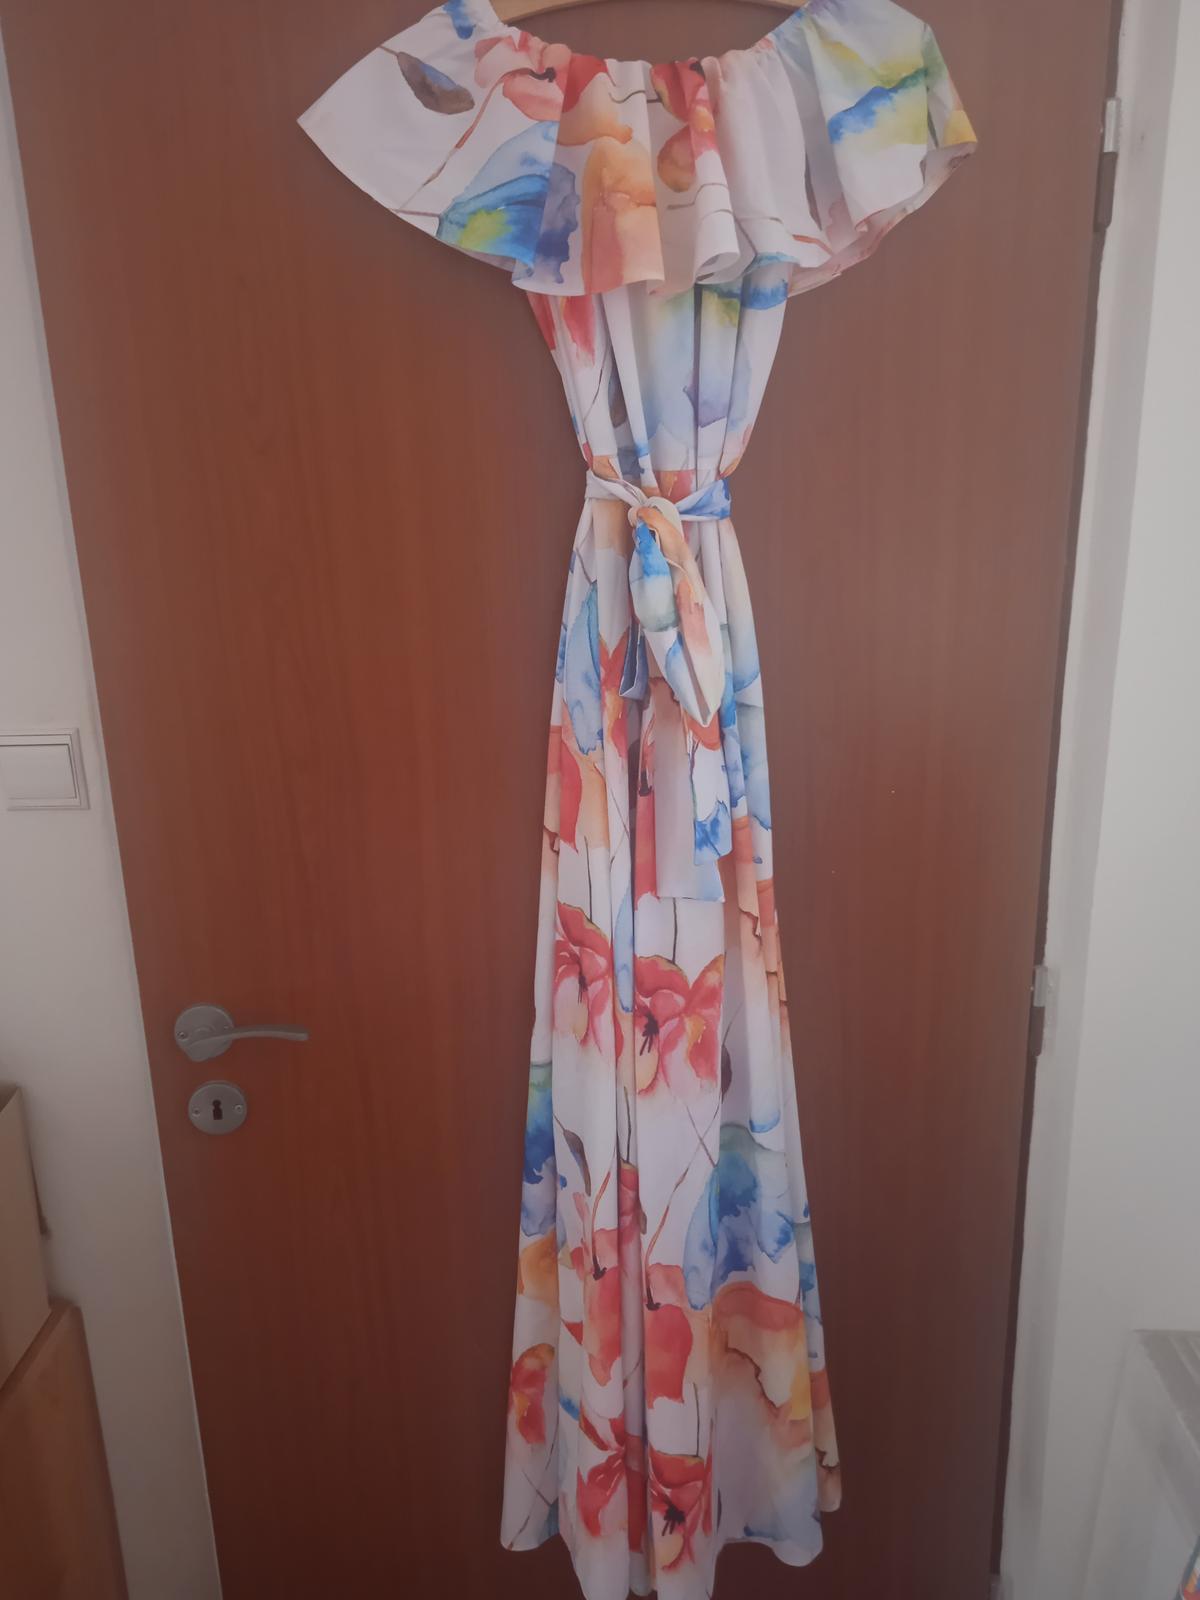 Letní společenské šaty Numoco vel.L - Obrázek č. 1